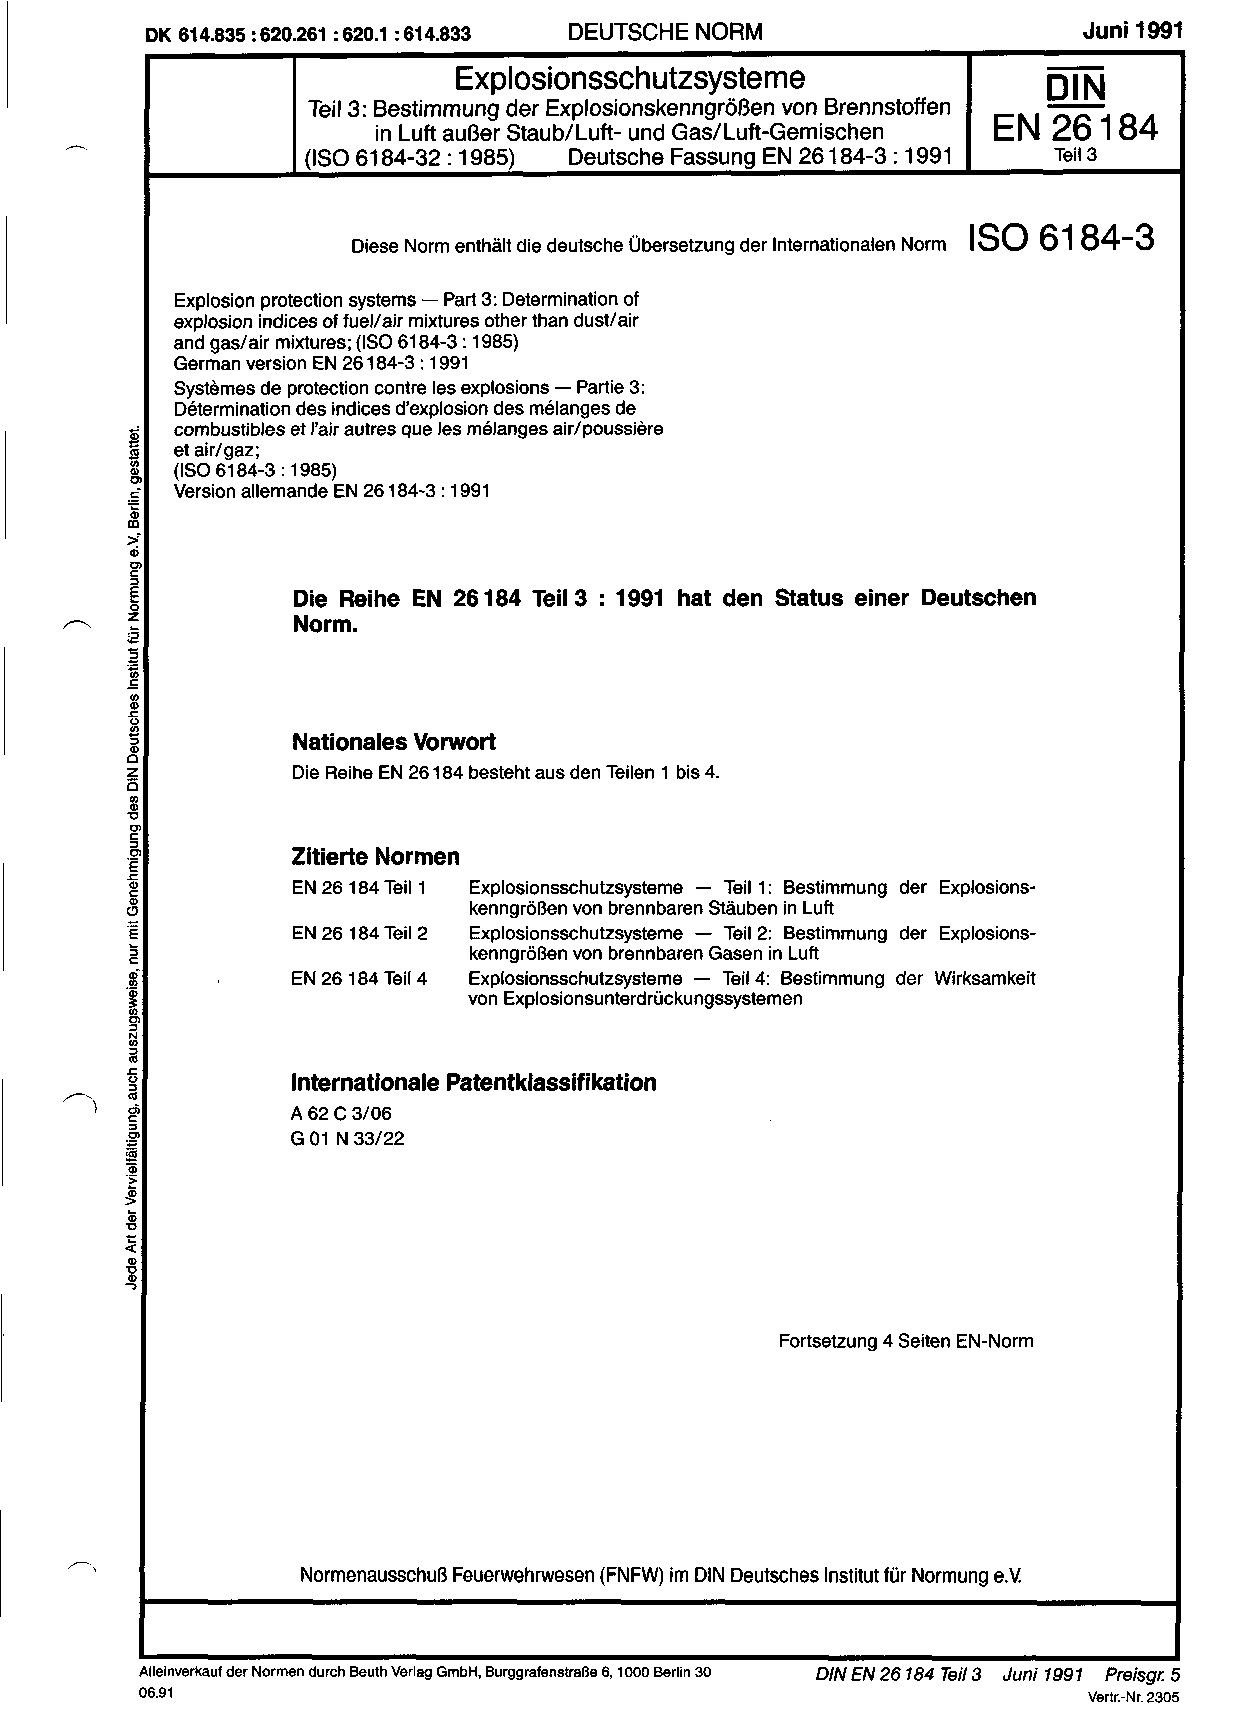 DIN EN 26184-3:1991封面图